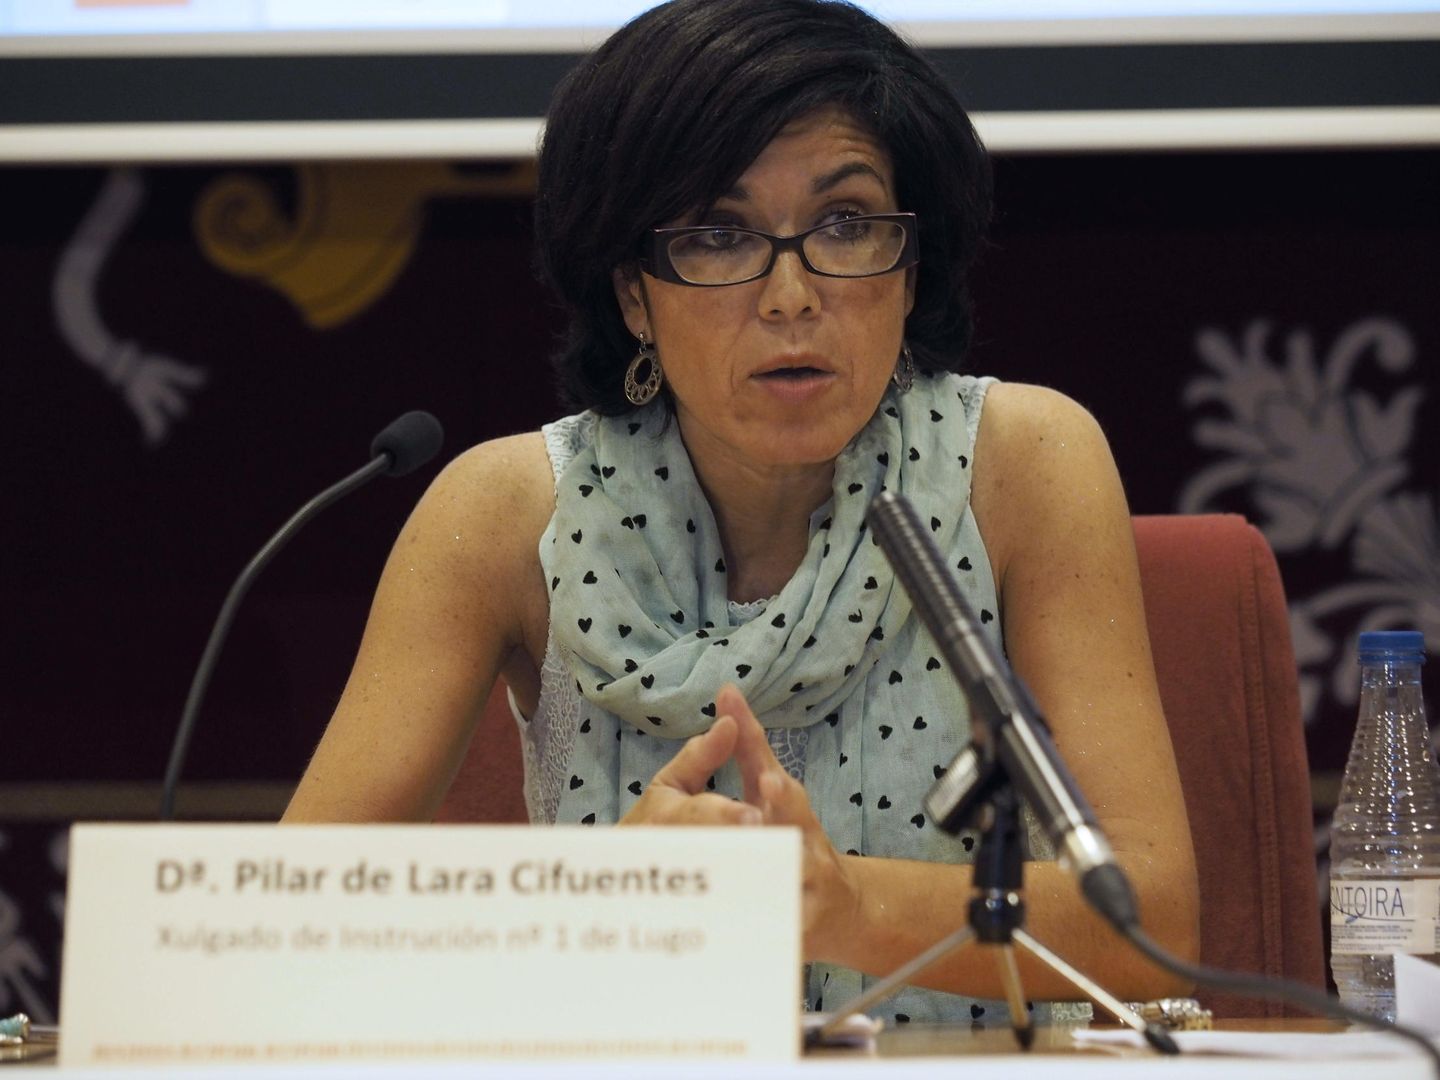 La titular del Juzgado de Instrucción Número 1 de Lugo, Pilar de Lara. (EFE)